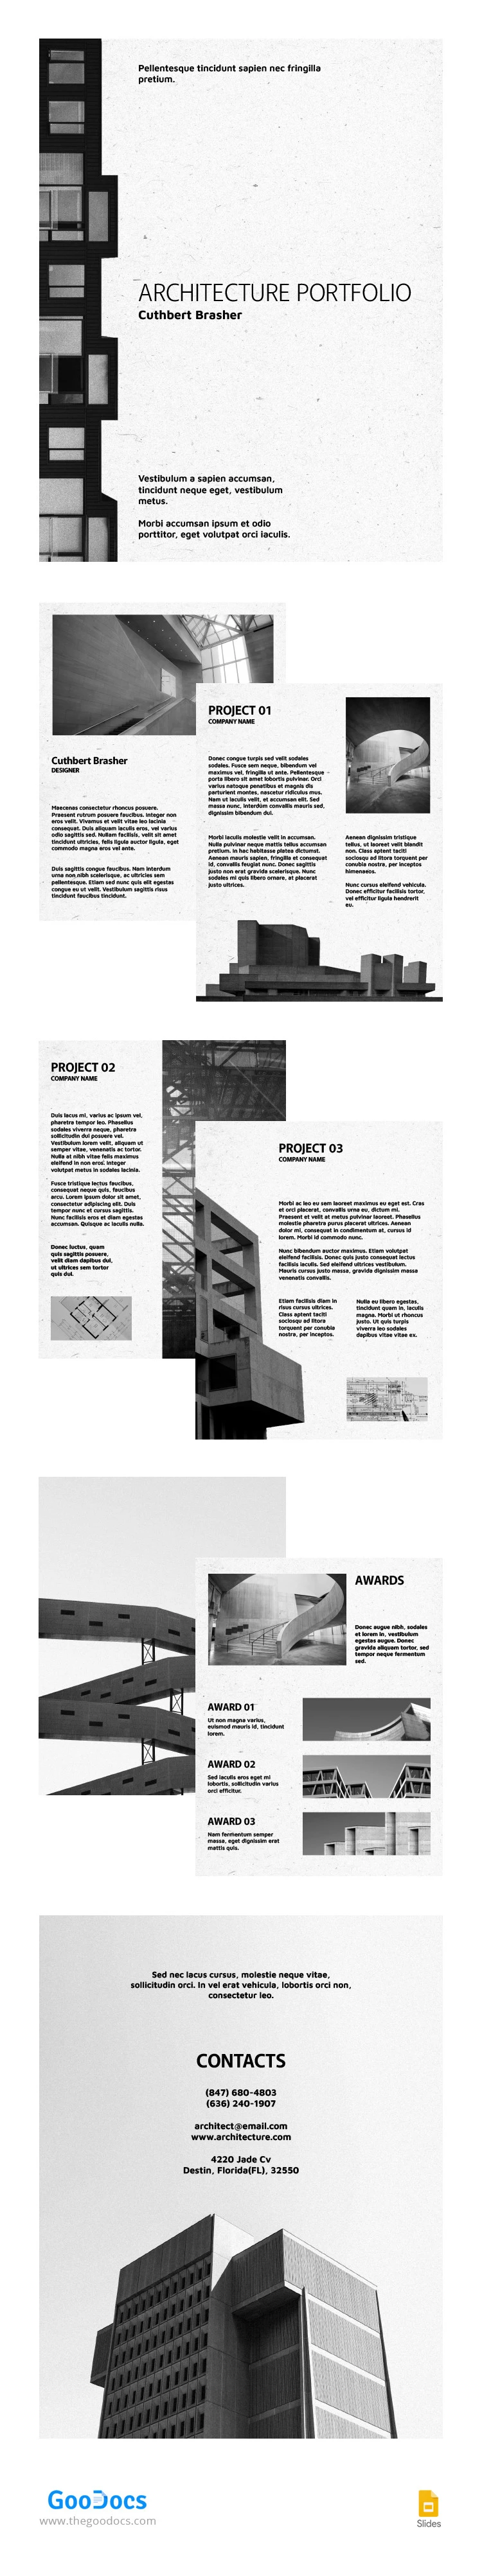 Portafolio de Arquitectura en Blanco y Negro - free Google Docs Template - 10065449